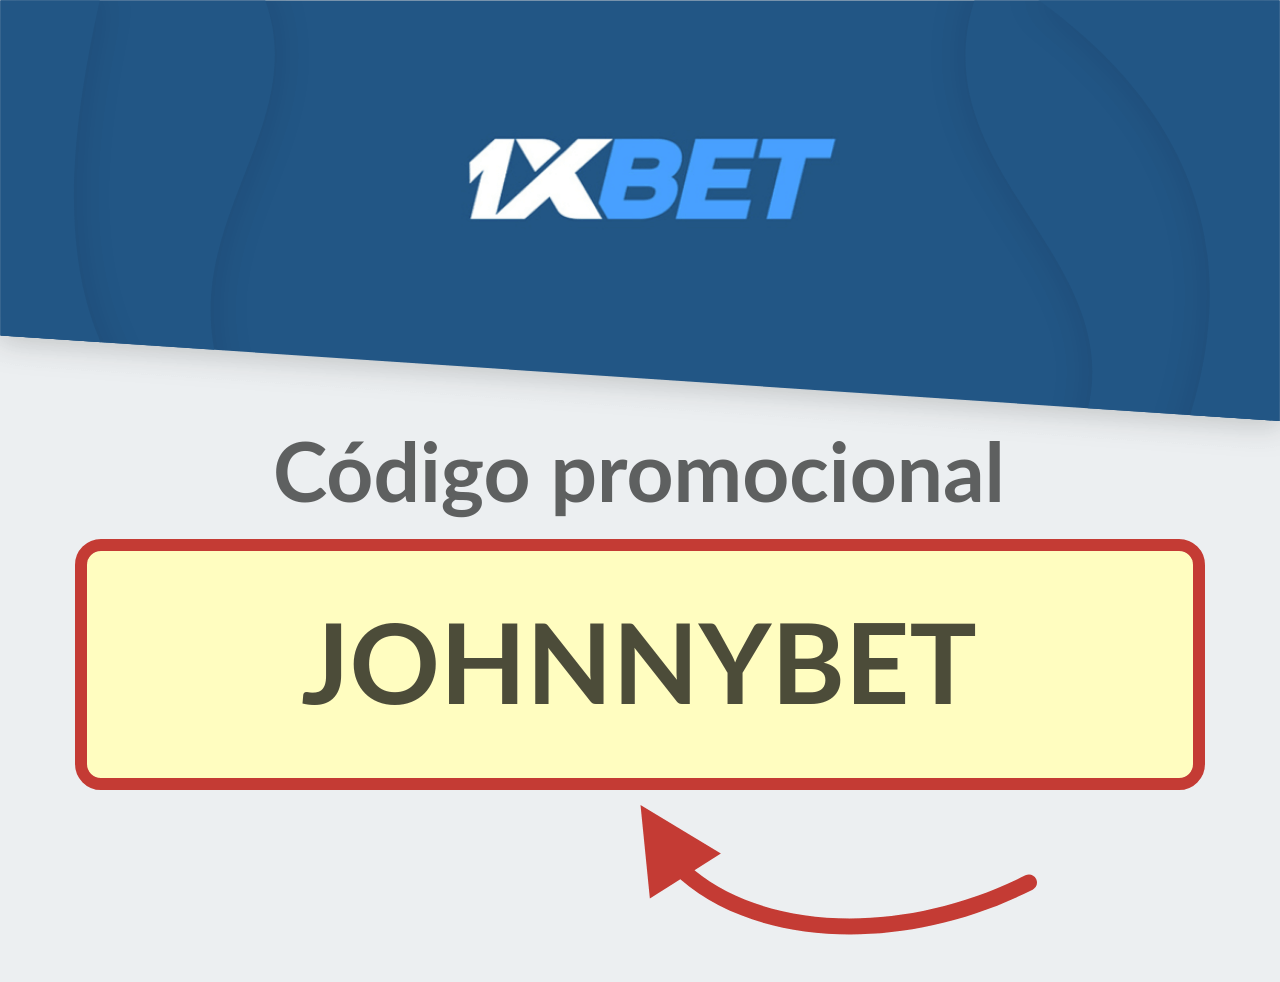 Código Promocional 1XBET México: JOHNNYBET